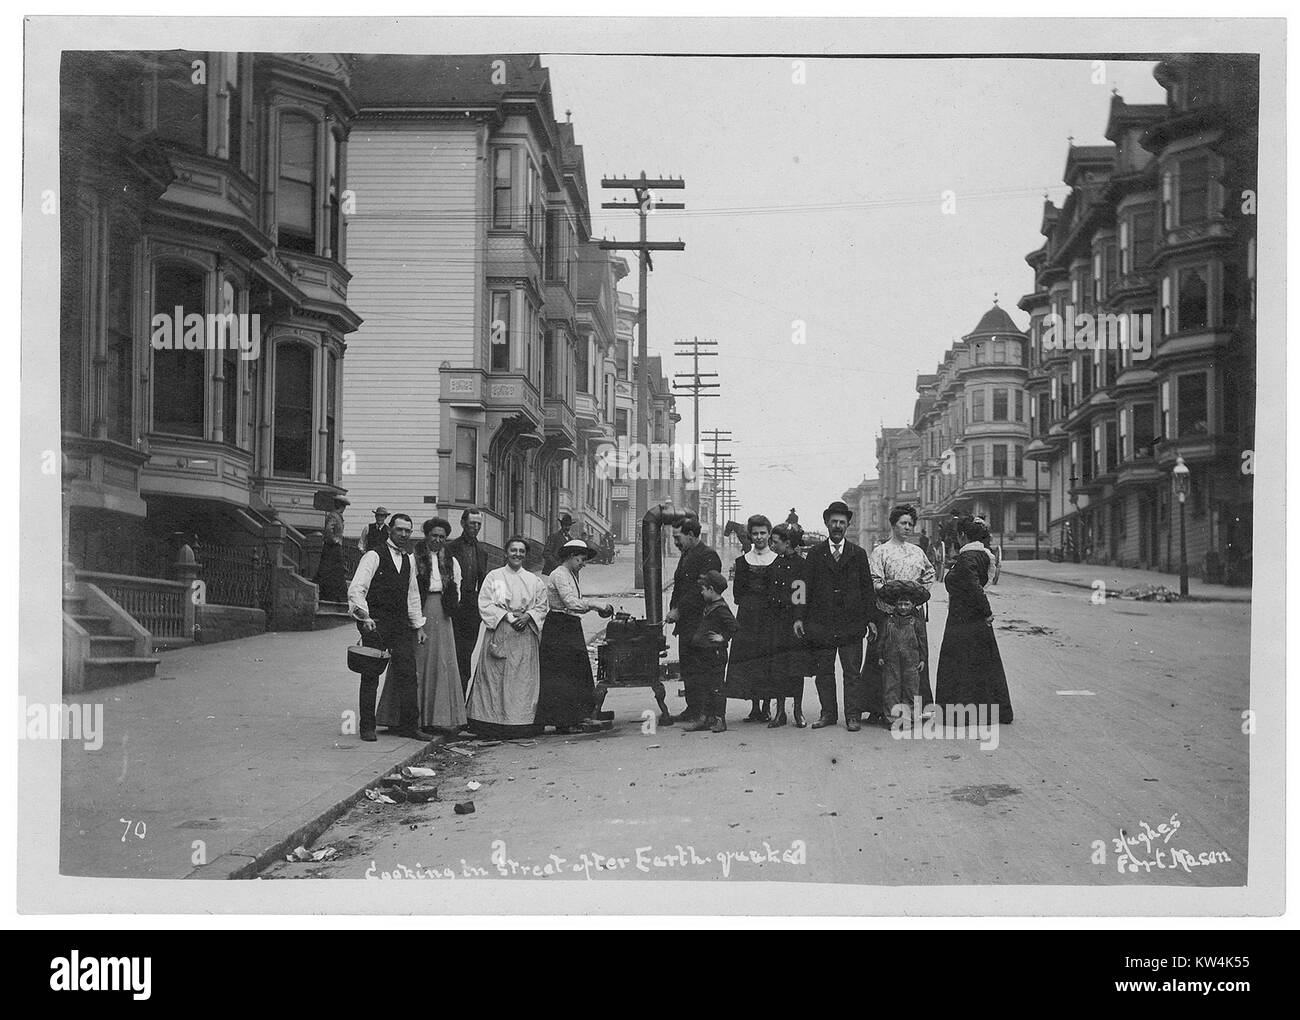 La gente la cottura per le strade di San Francisco, California dopo il terremoto del 1906, 1906. Immagine cortesia archivi nazionali. Foto Stock